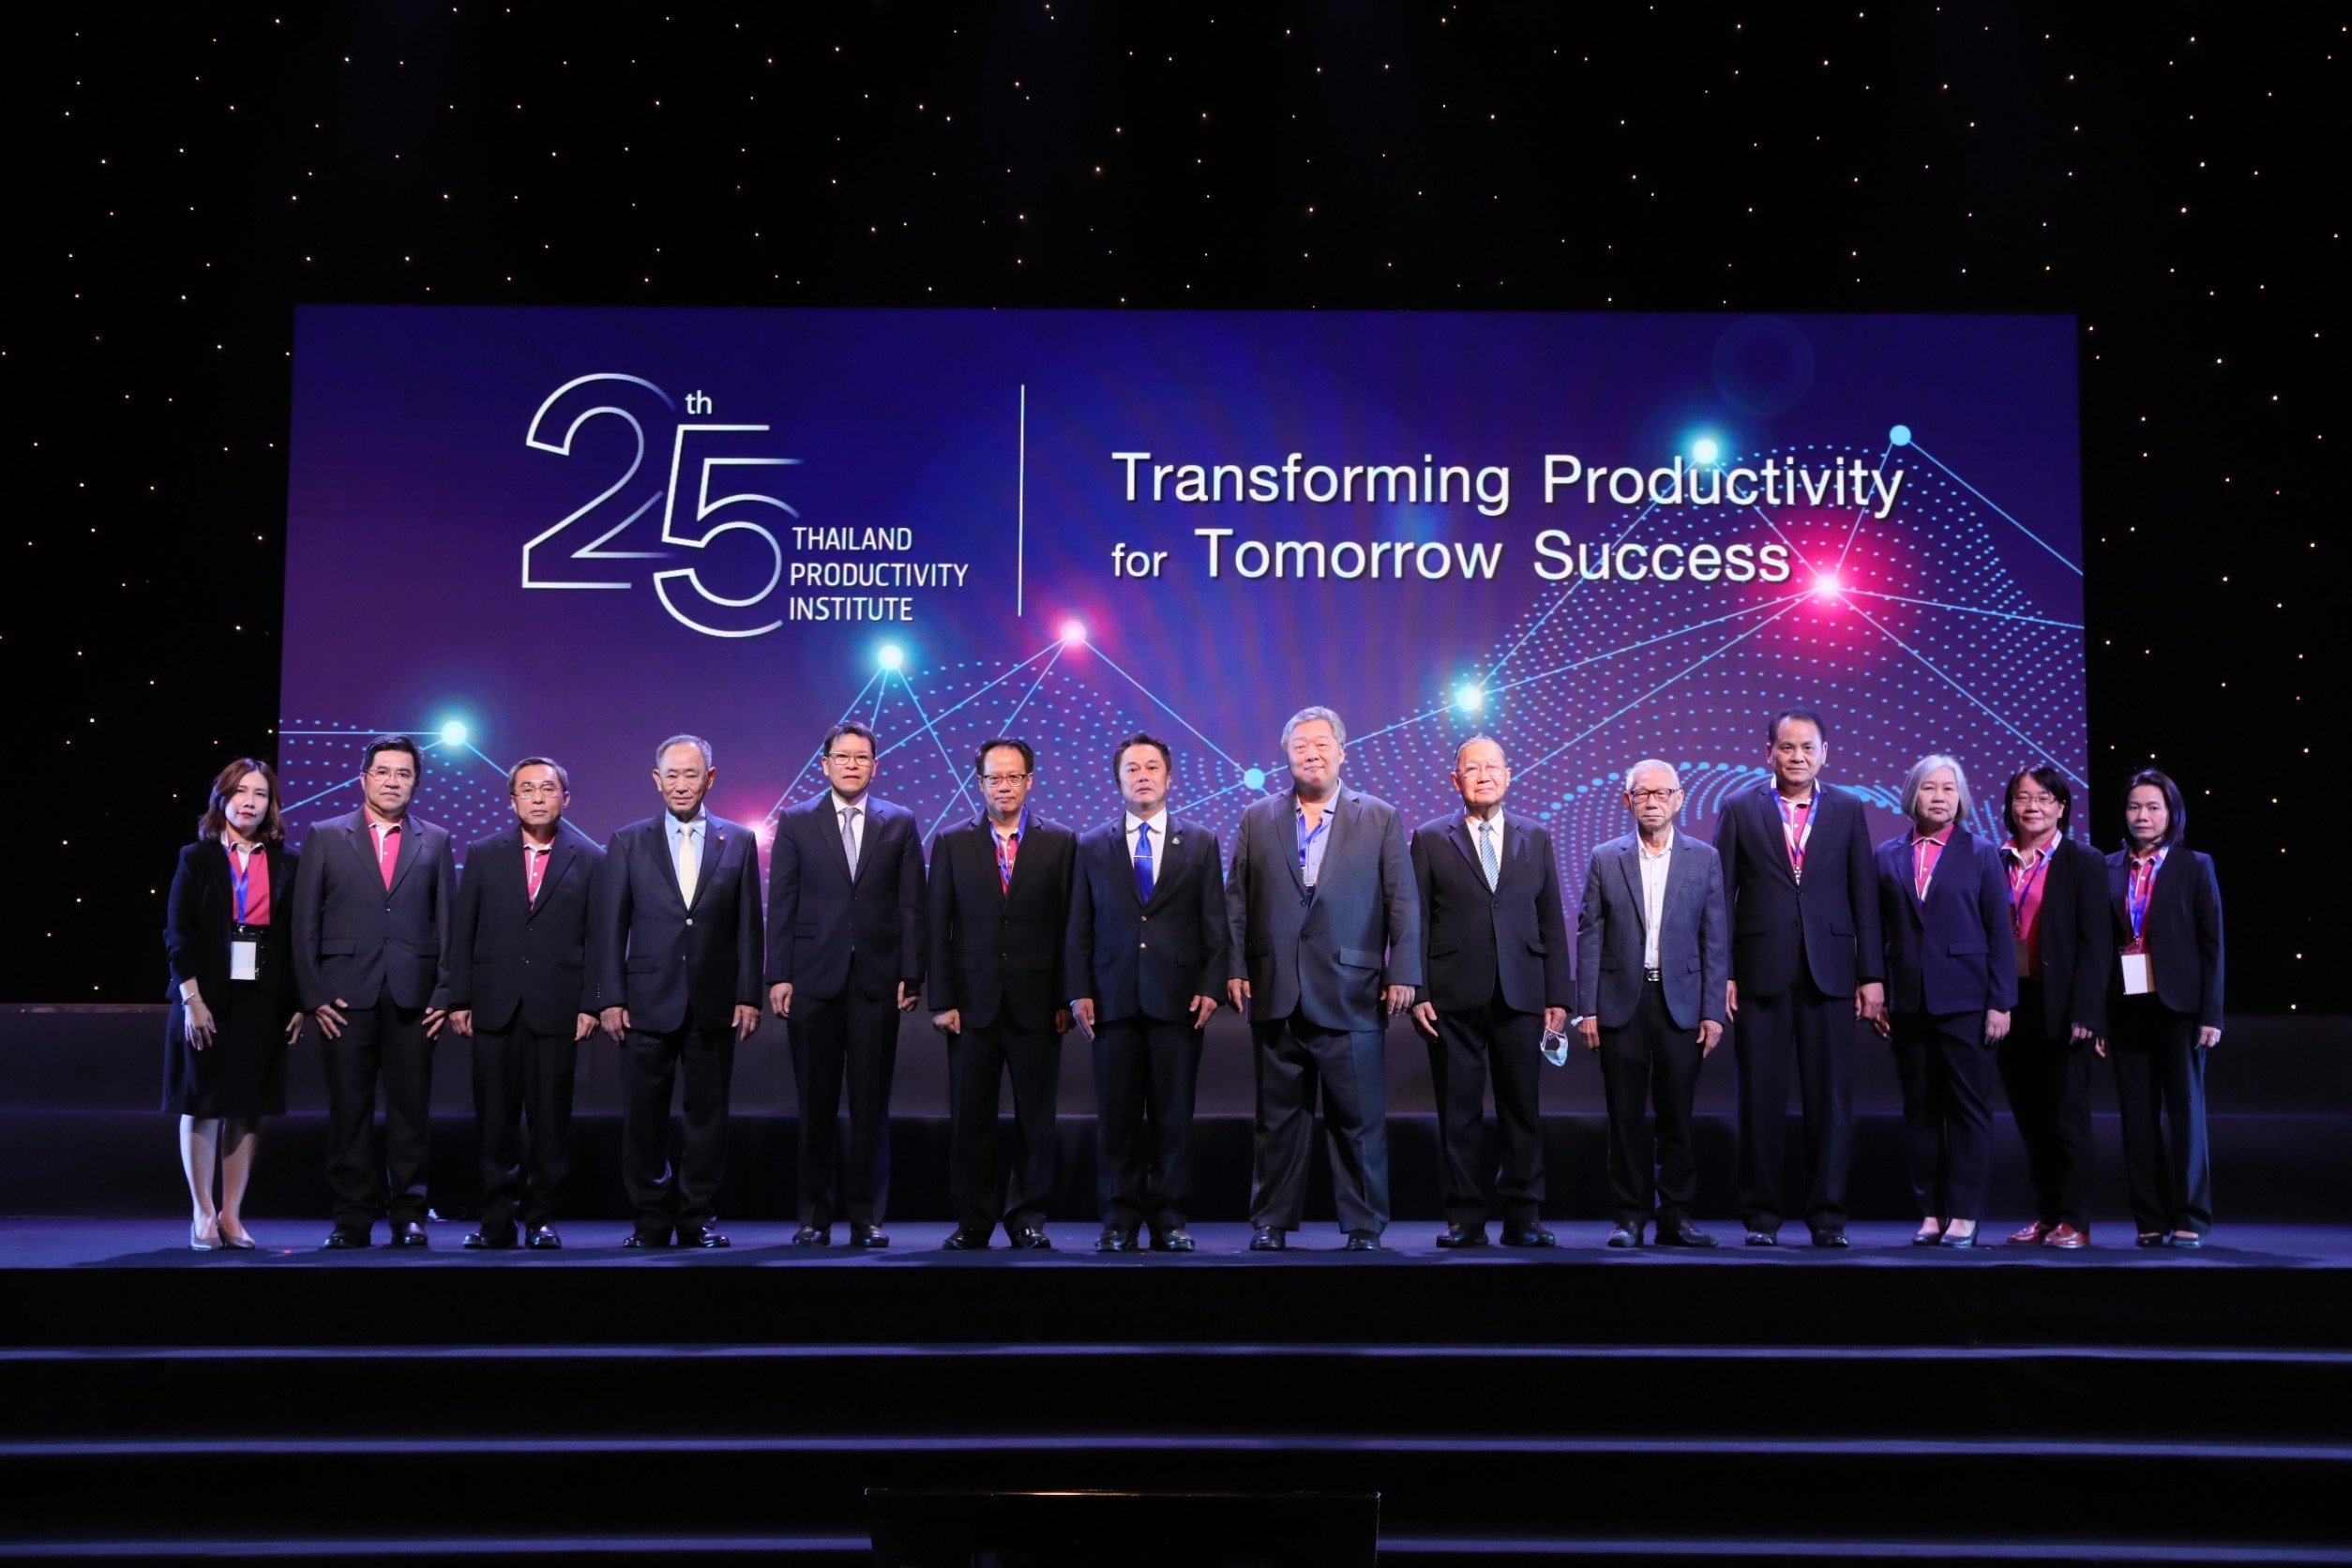 ภาพข่าว: สถาบันเพิ่มผลผลิตแห่งชาติ ครบรอบ 25 ปี ขับเคลื่อนผลิตภาพภาคอุตสาหกรรมไทย ชูแนวคิด Transforming Productivity for Tomorrow